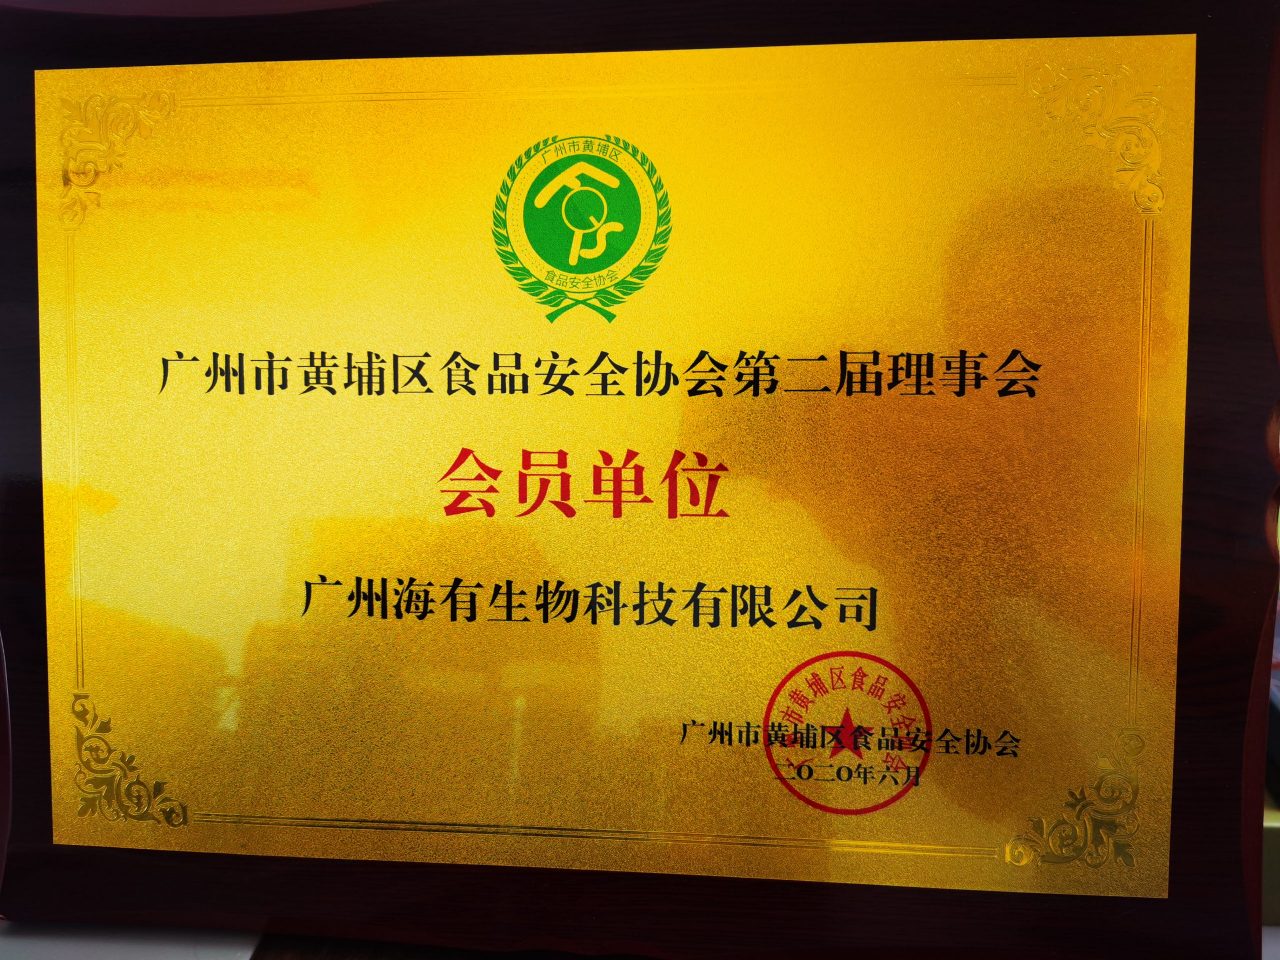 广州市黄埔区食品安全协会第二届理事会会员单位